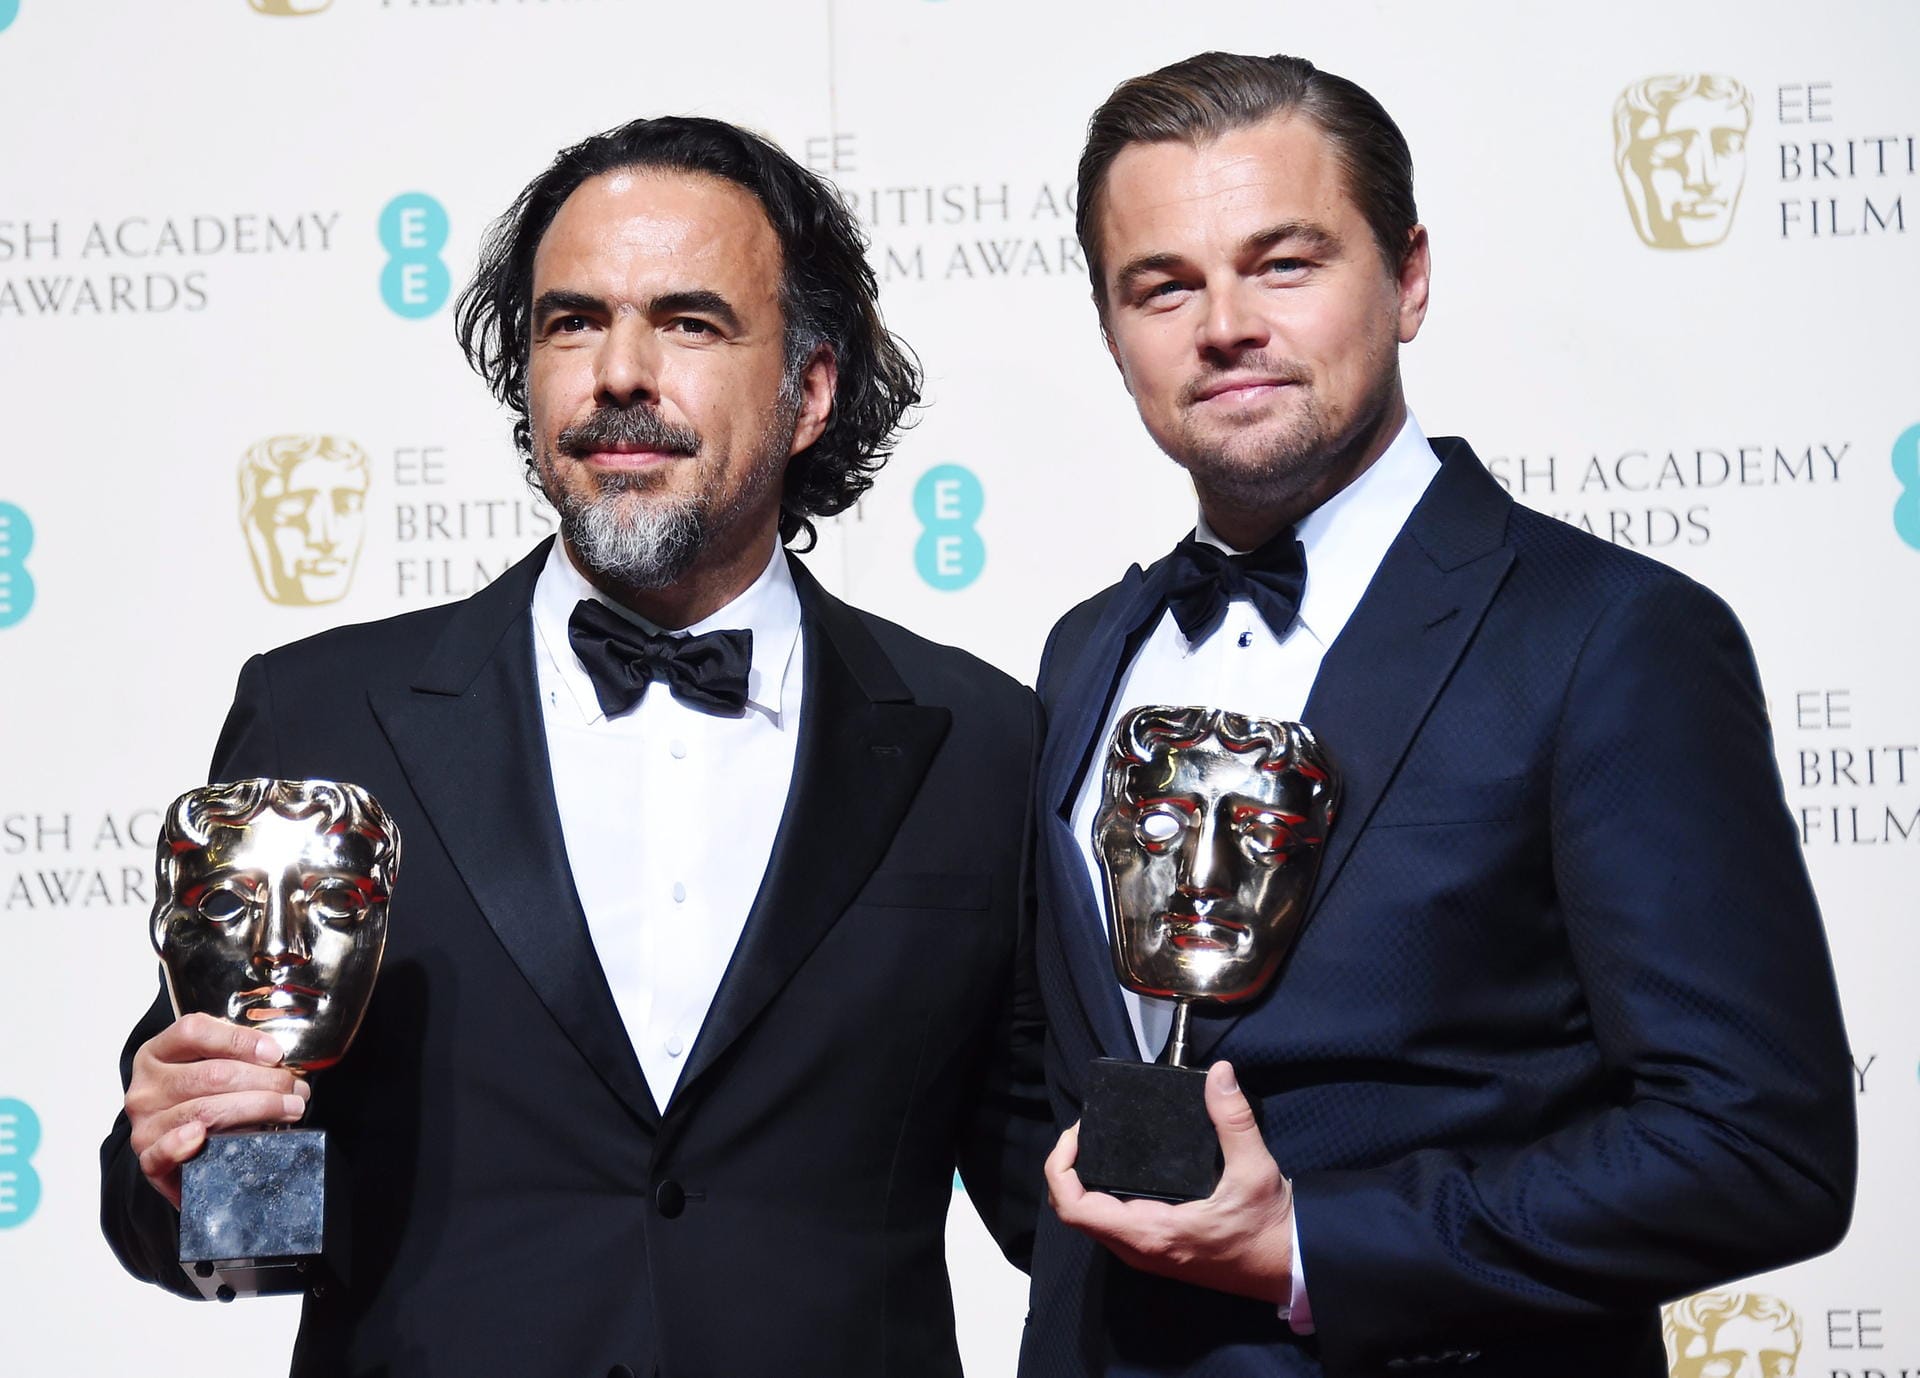 Regisseur Alejandro Gonzalez Inarritu und Hauptdarsteller Leonardo DiCaprio freuen sich über ihre Preise. Ihr Film "The Revenant" räumte fünf Bafta-Awards ab und war damit der Gewinner des Abends.